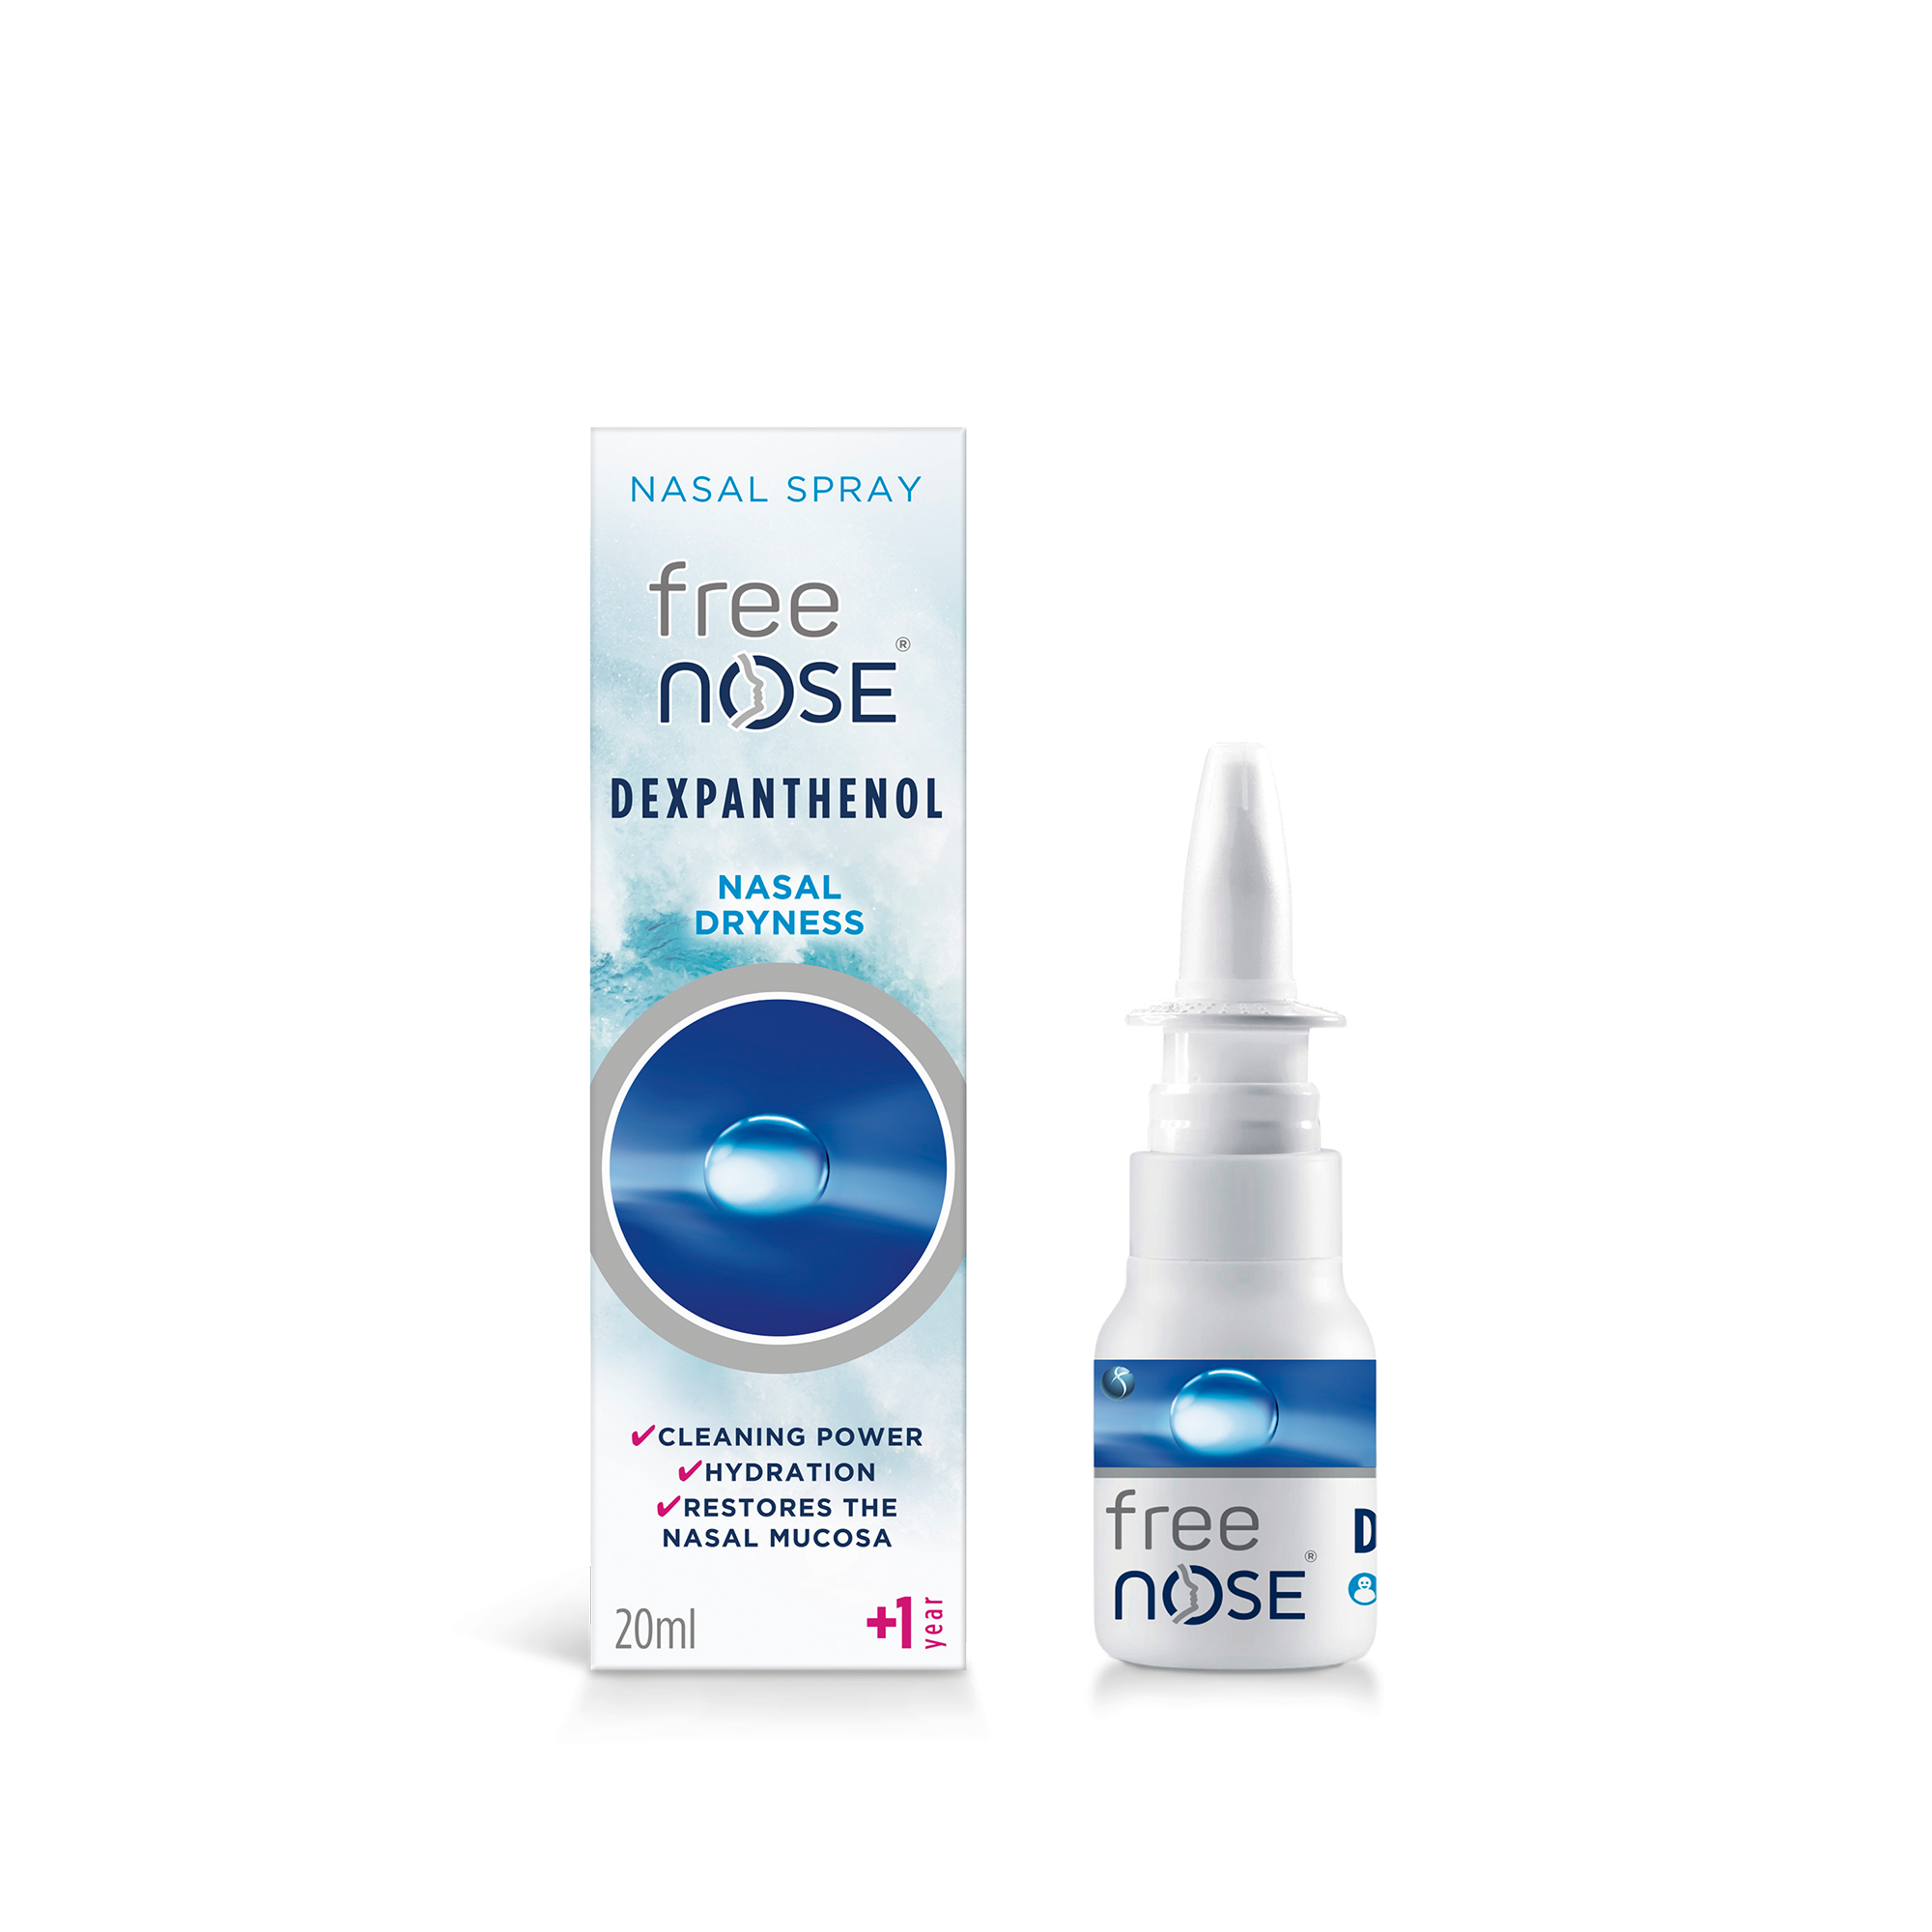 Lavado nasal en adultos mayores: ¿es recomendable?